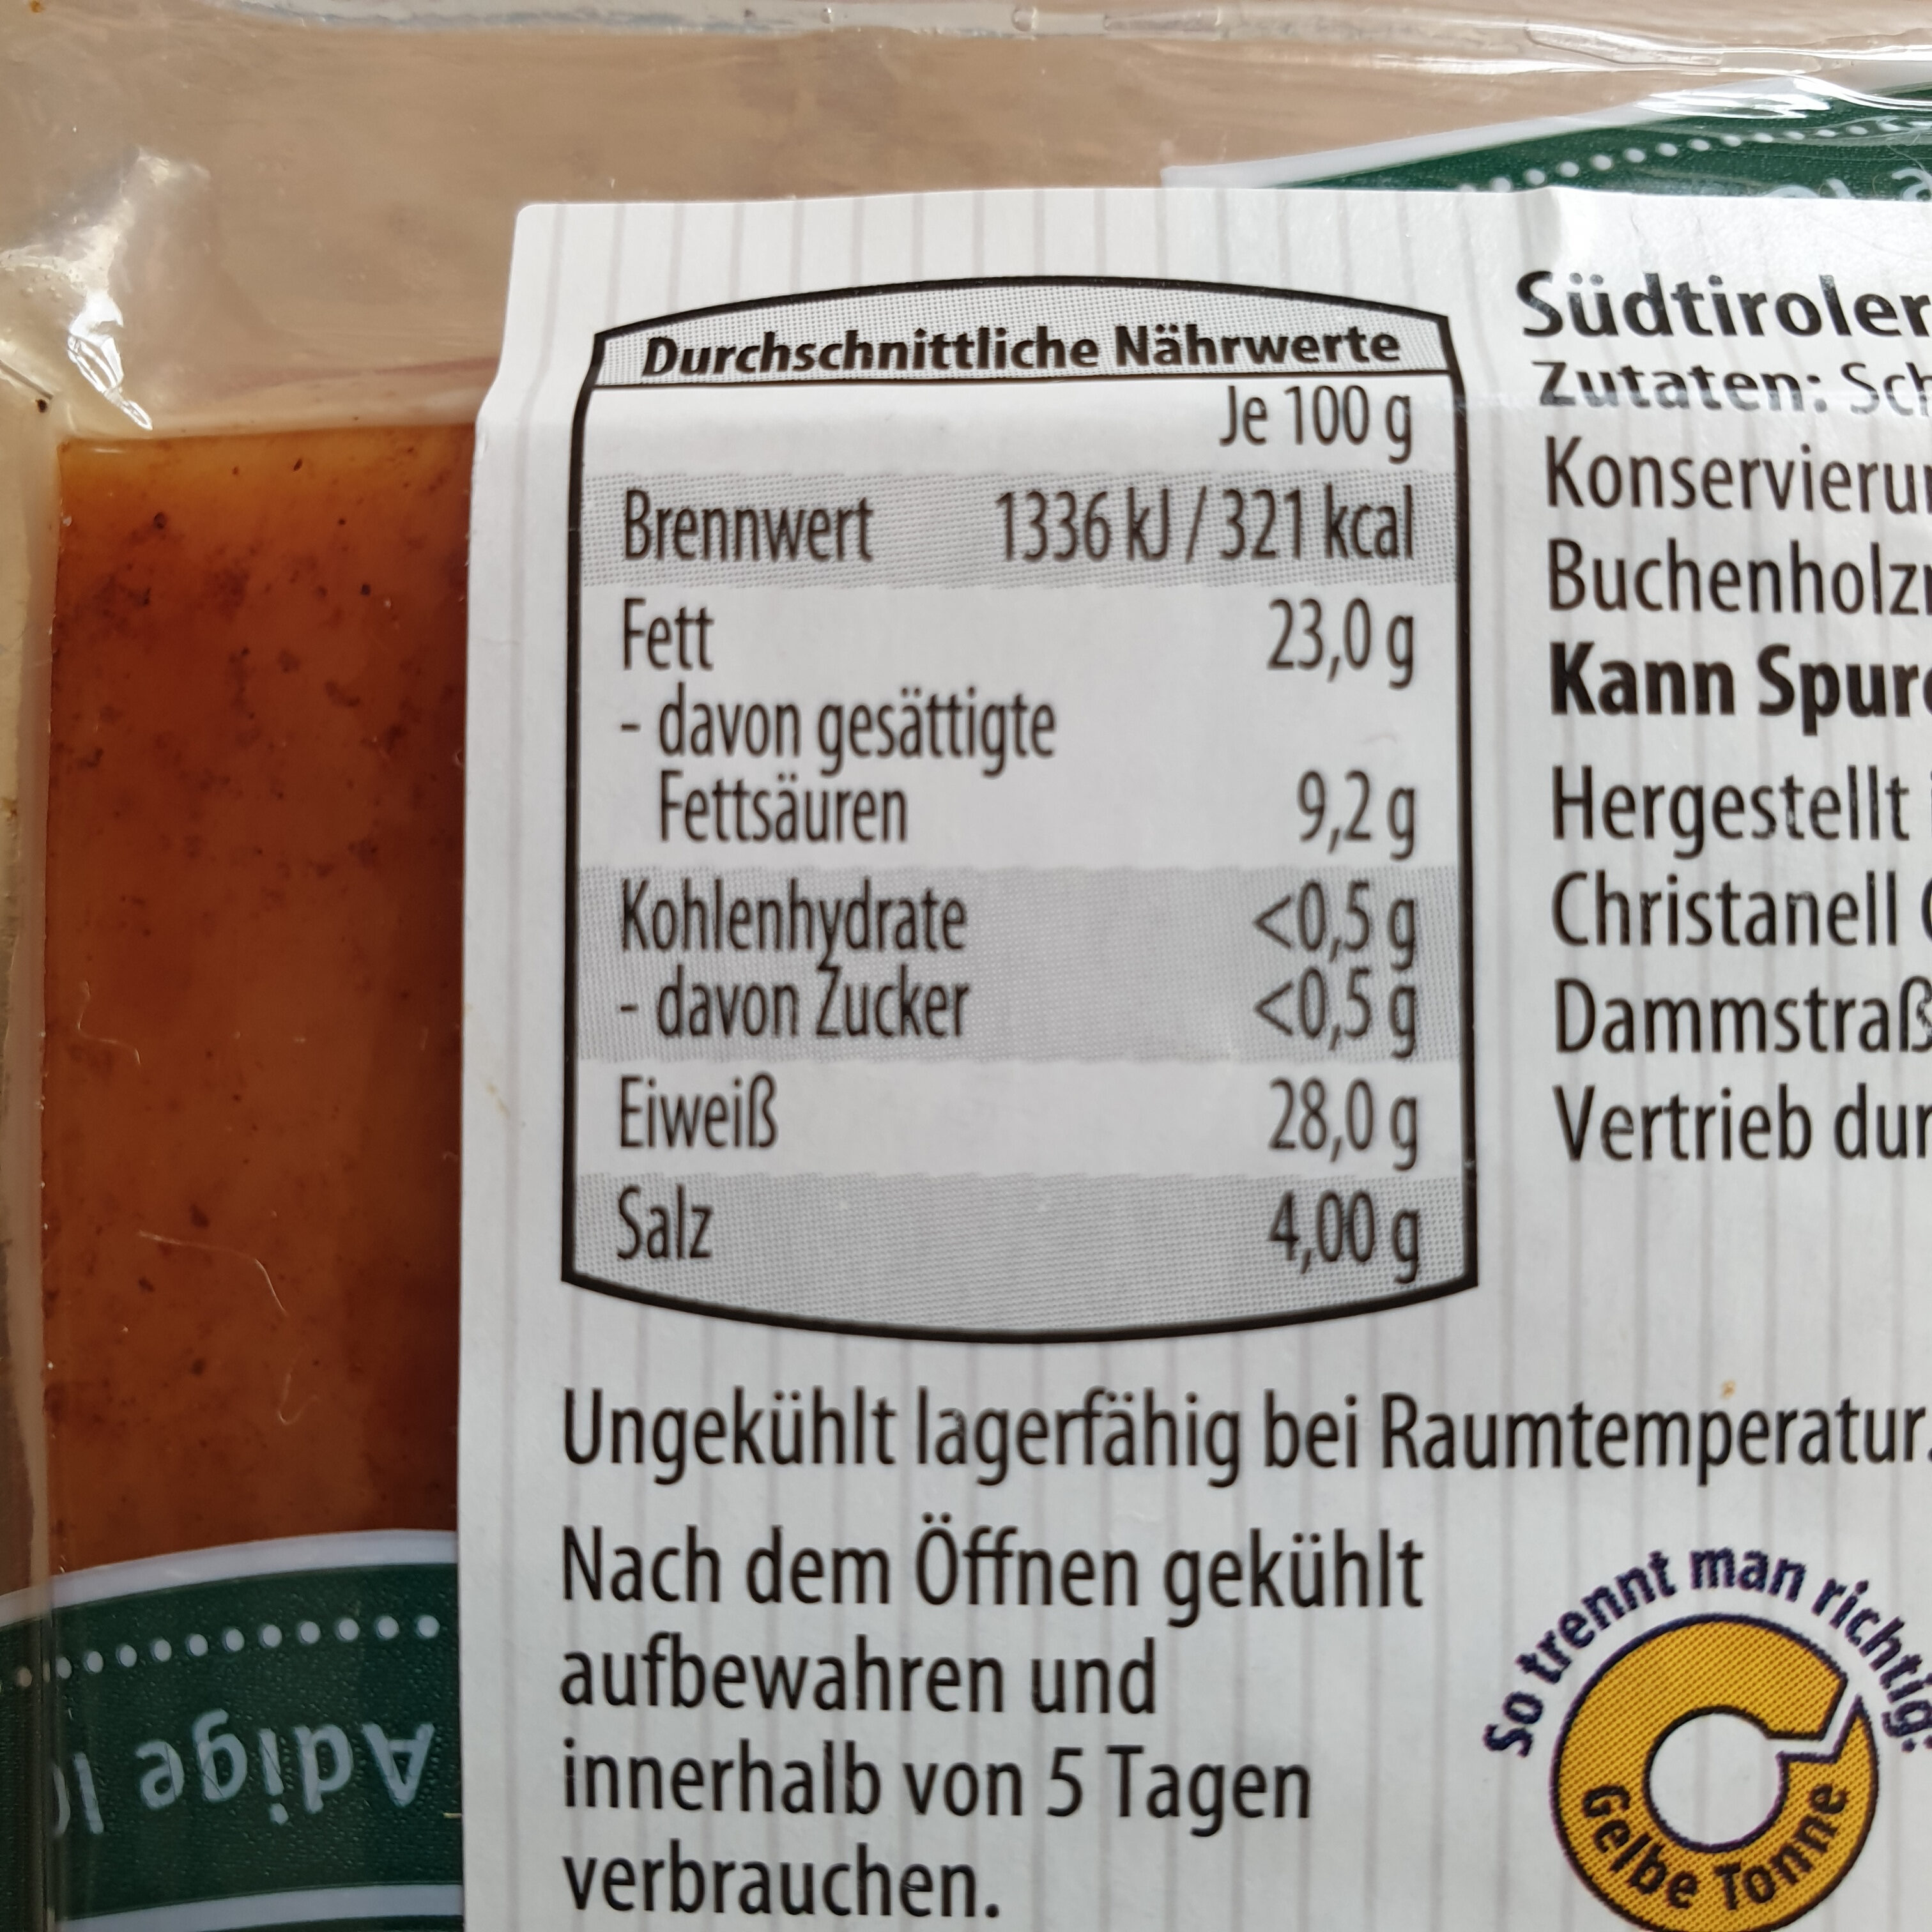 Südtiroler Speck - Schinkenspeck - Nutrition facts - de